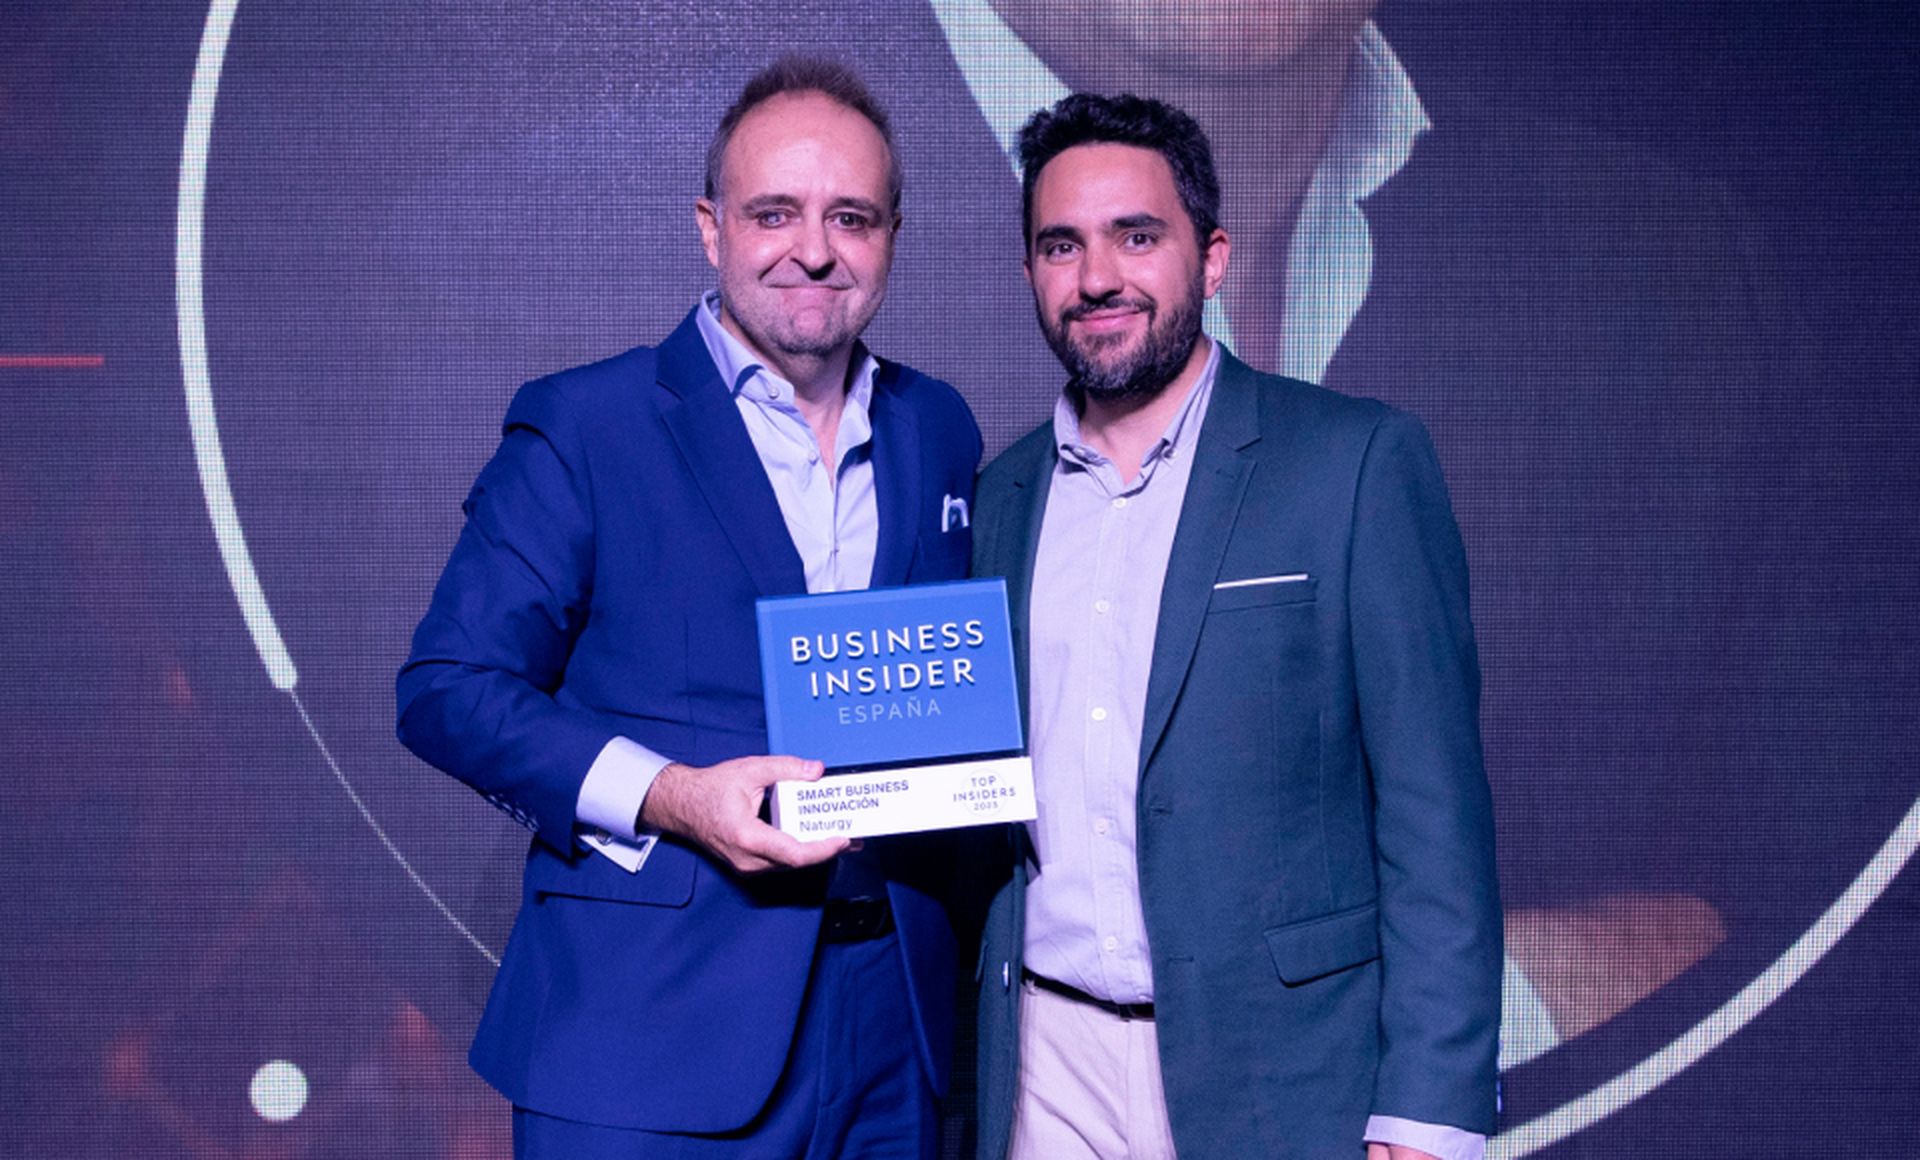 De izquierda a derecha, Jesús Chapado, responsable de Innovación de Naturgy, recibe el premio Top Insider del Año en la categoría de Smart Business Innovación de Víctor Pérez, redactor jefe de Business Insider España.